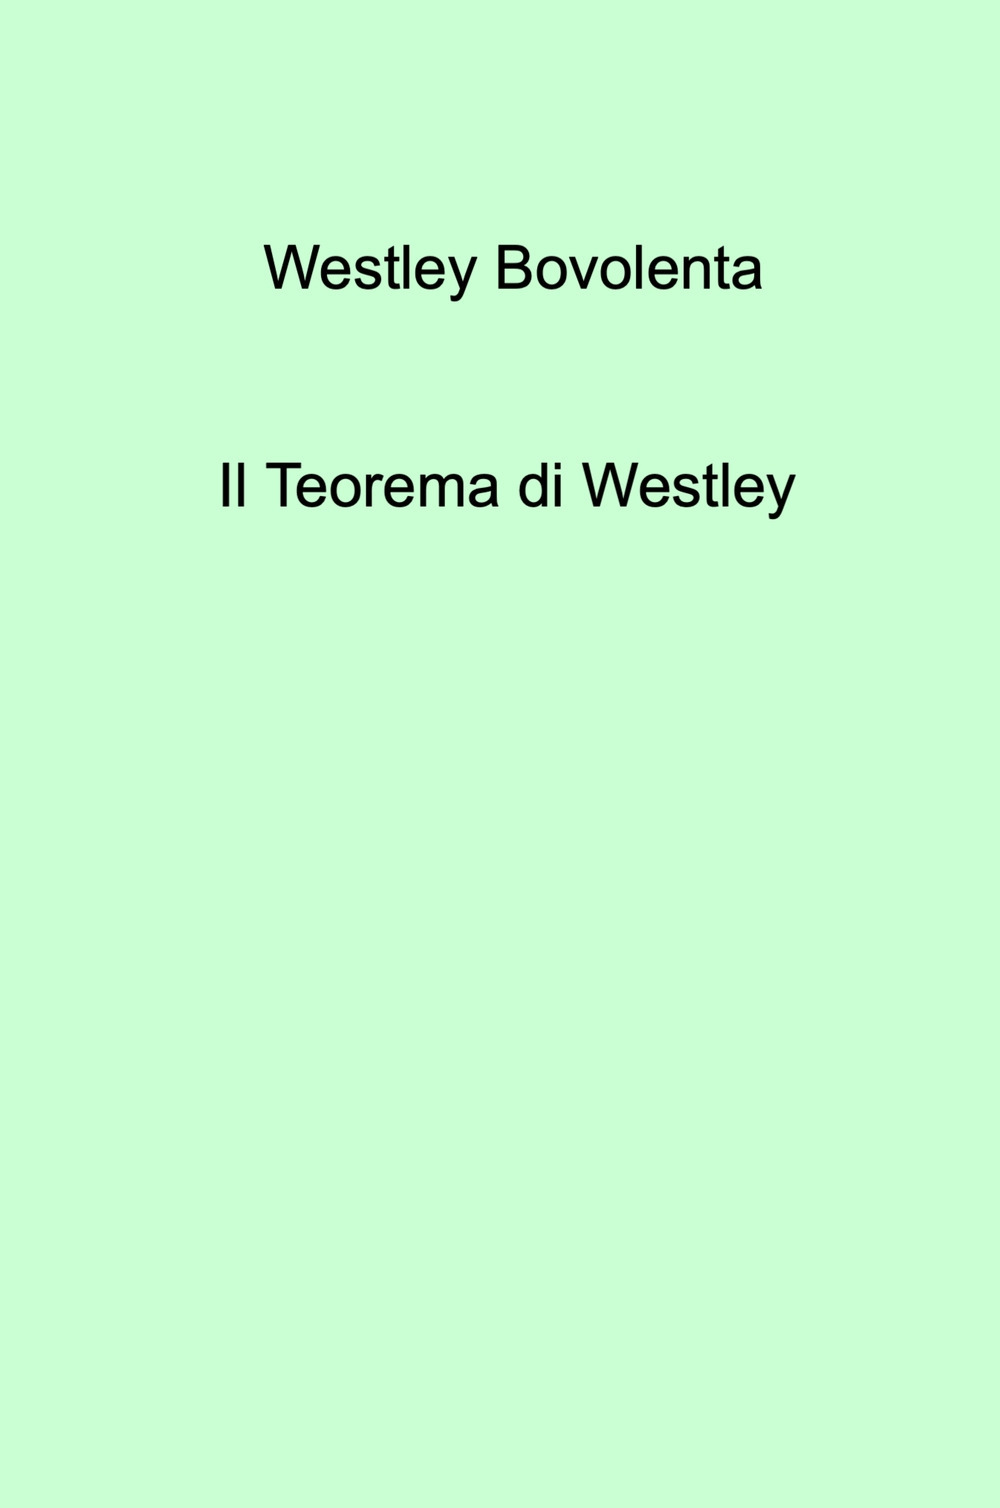 Il teorema di Westley